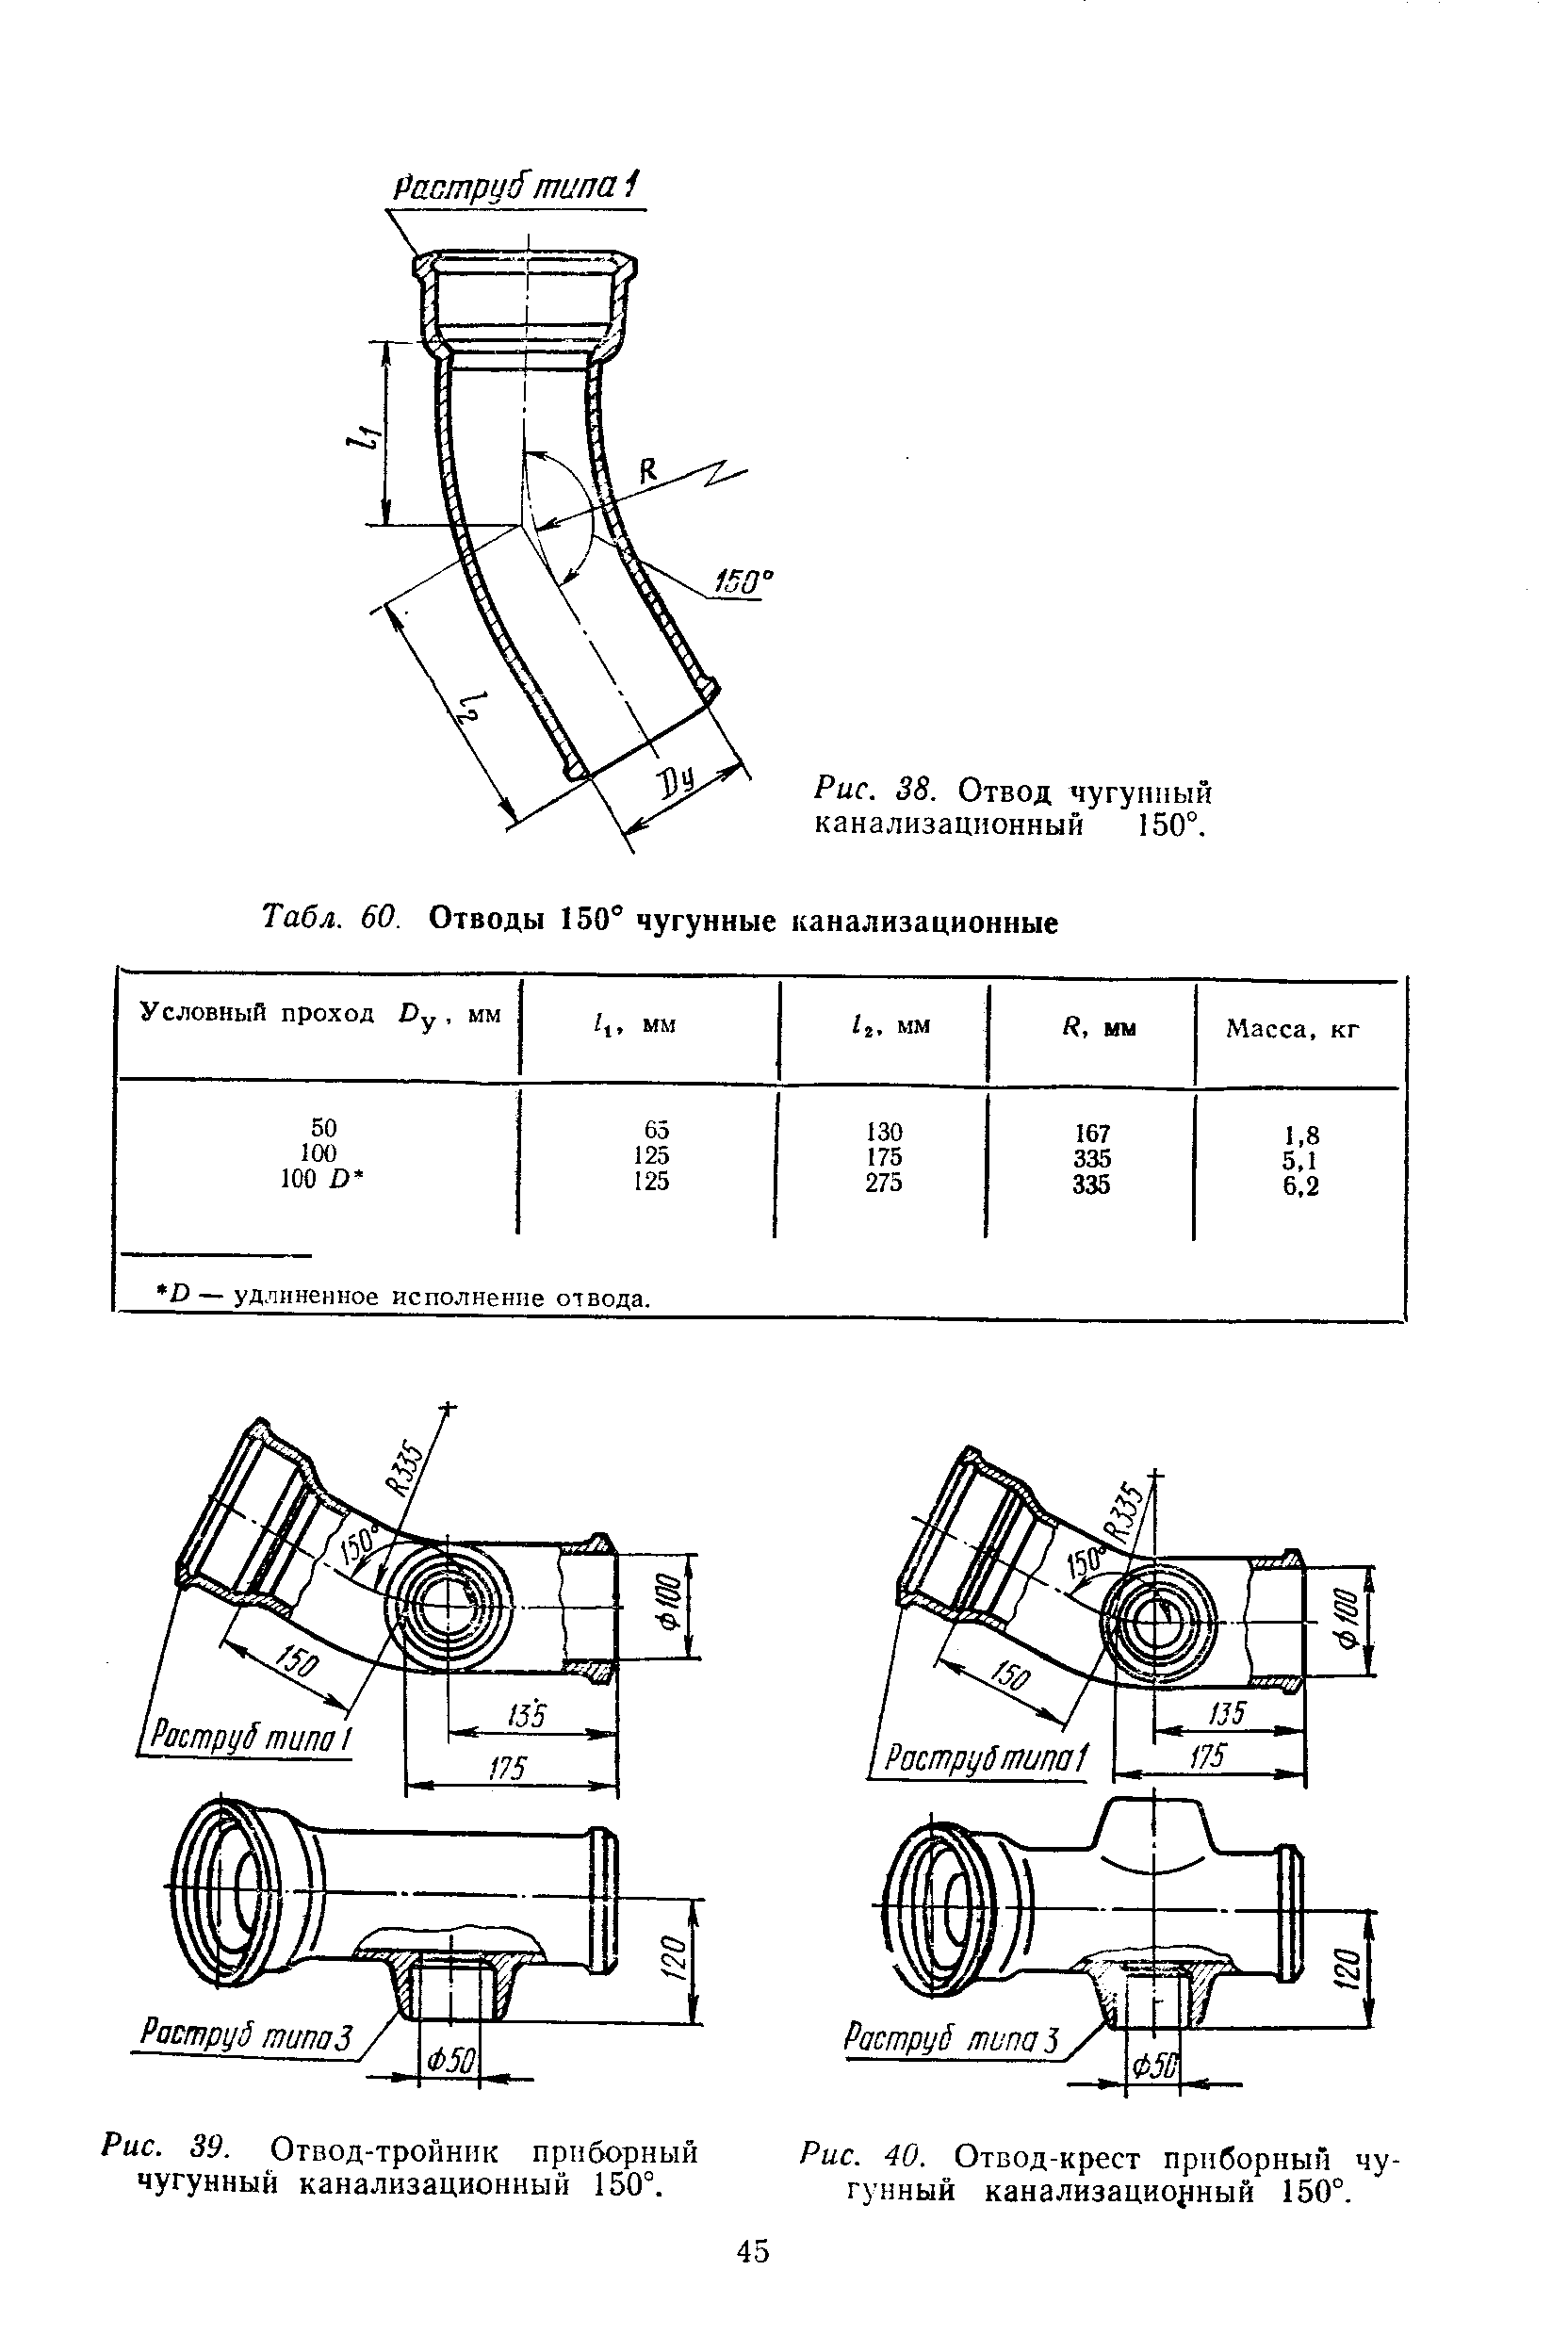 Рис. 39. Отвод-тройник приборный чугунный канализационный 150°.
